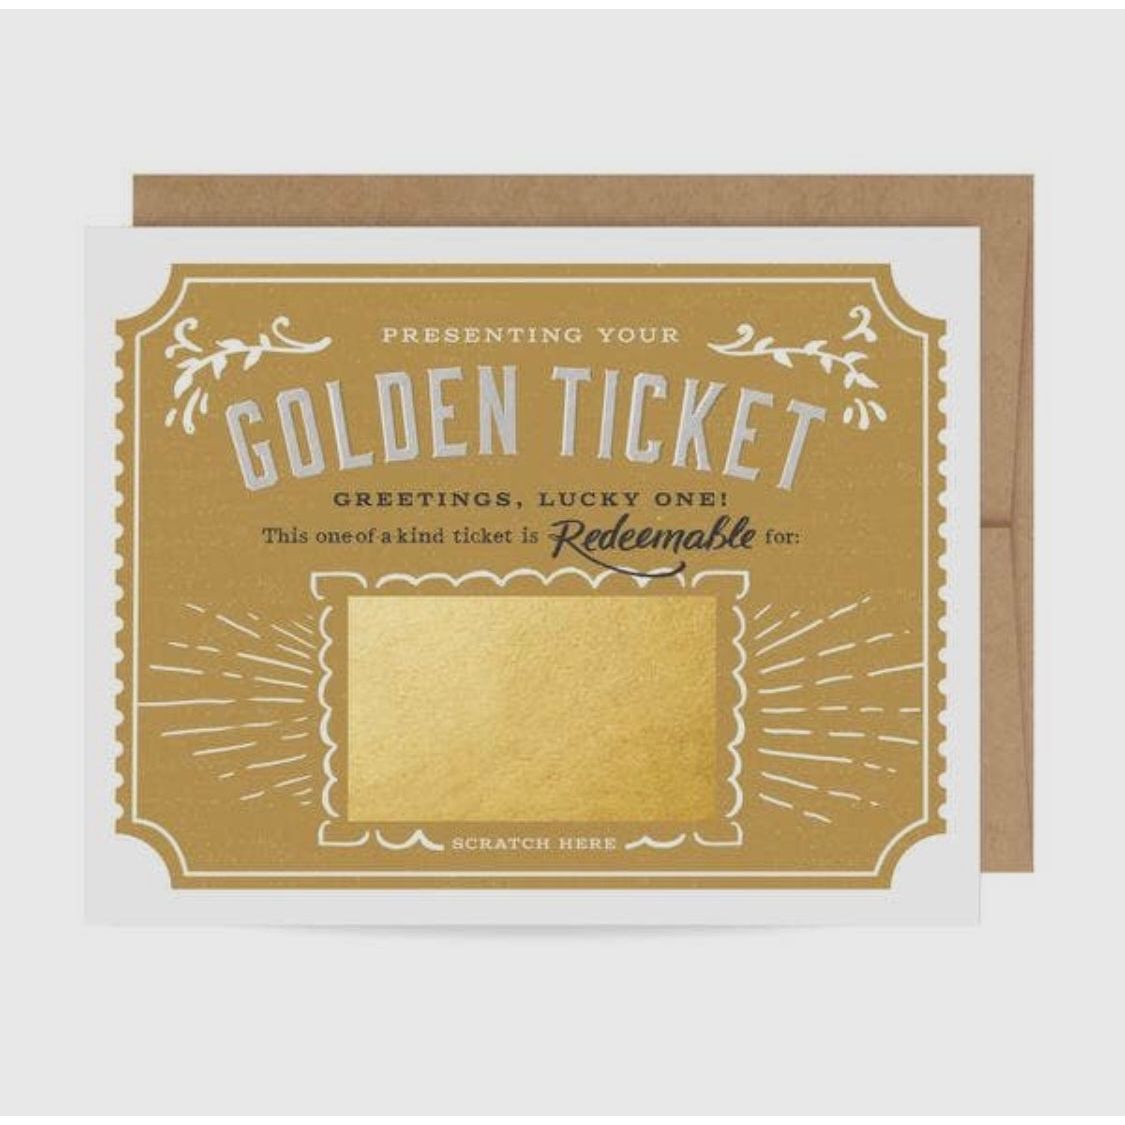 Scratch-Off Golden Ticket
Birthday Card